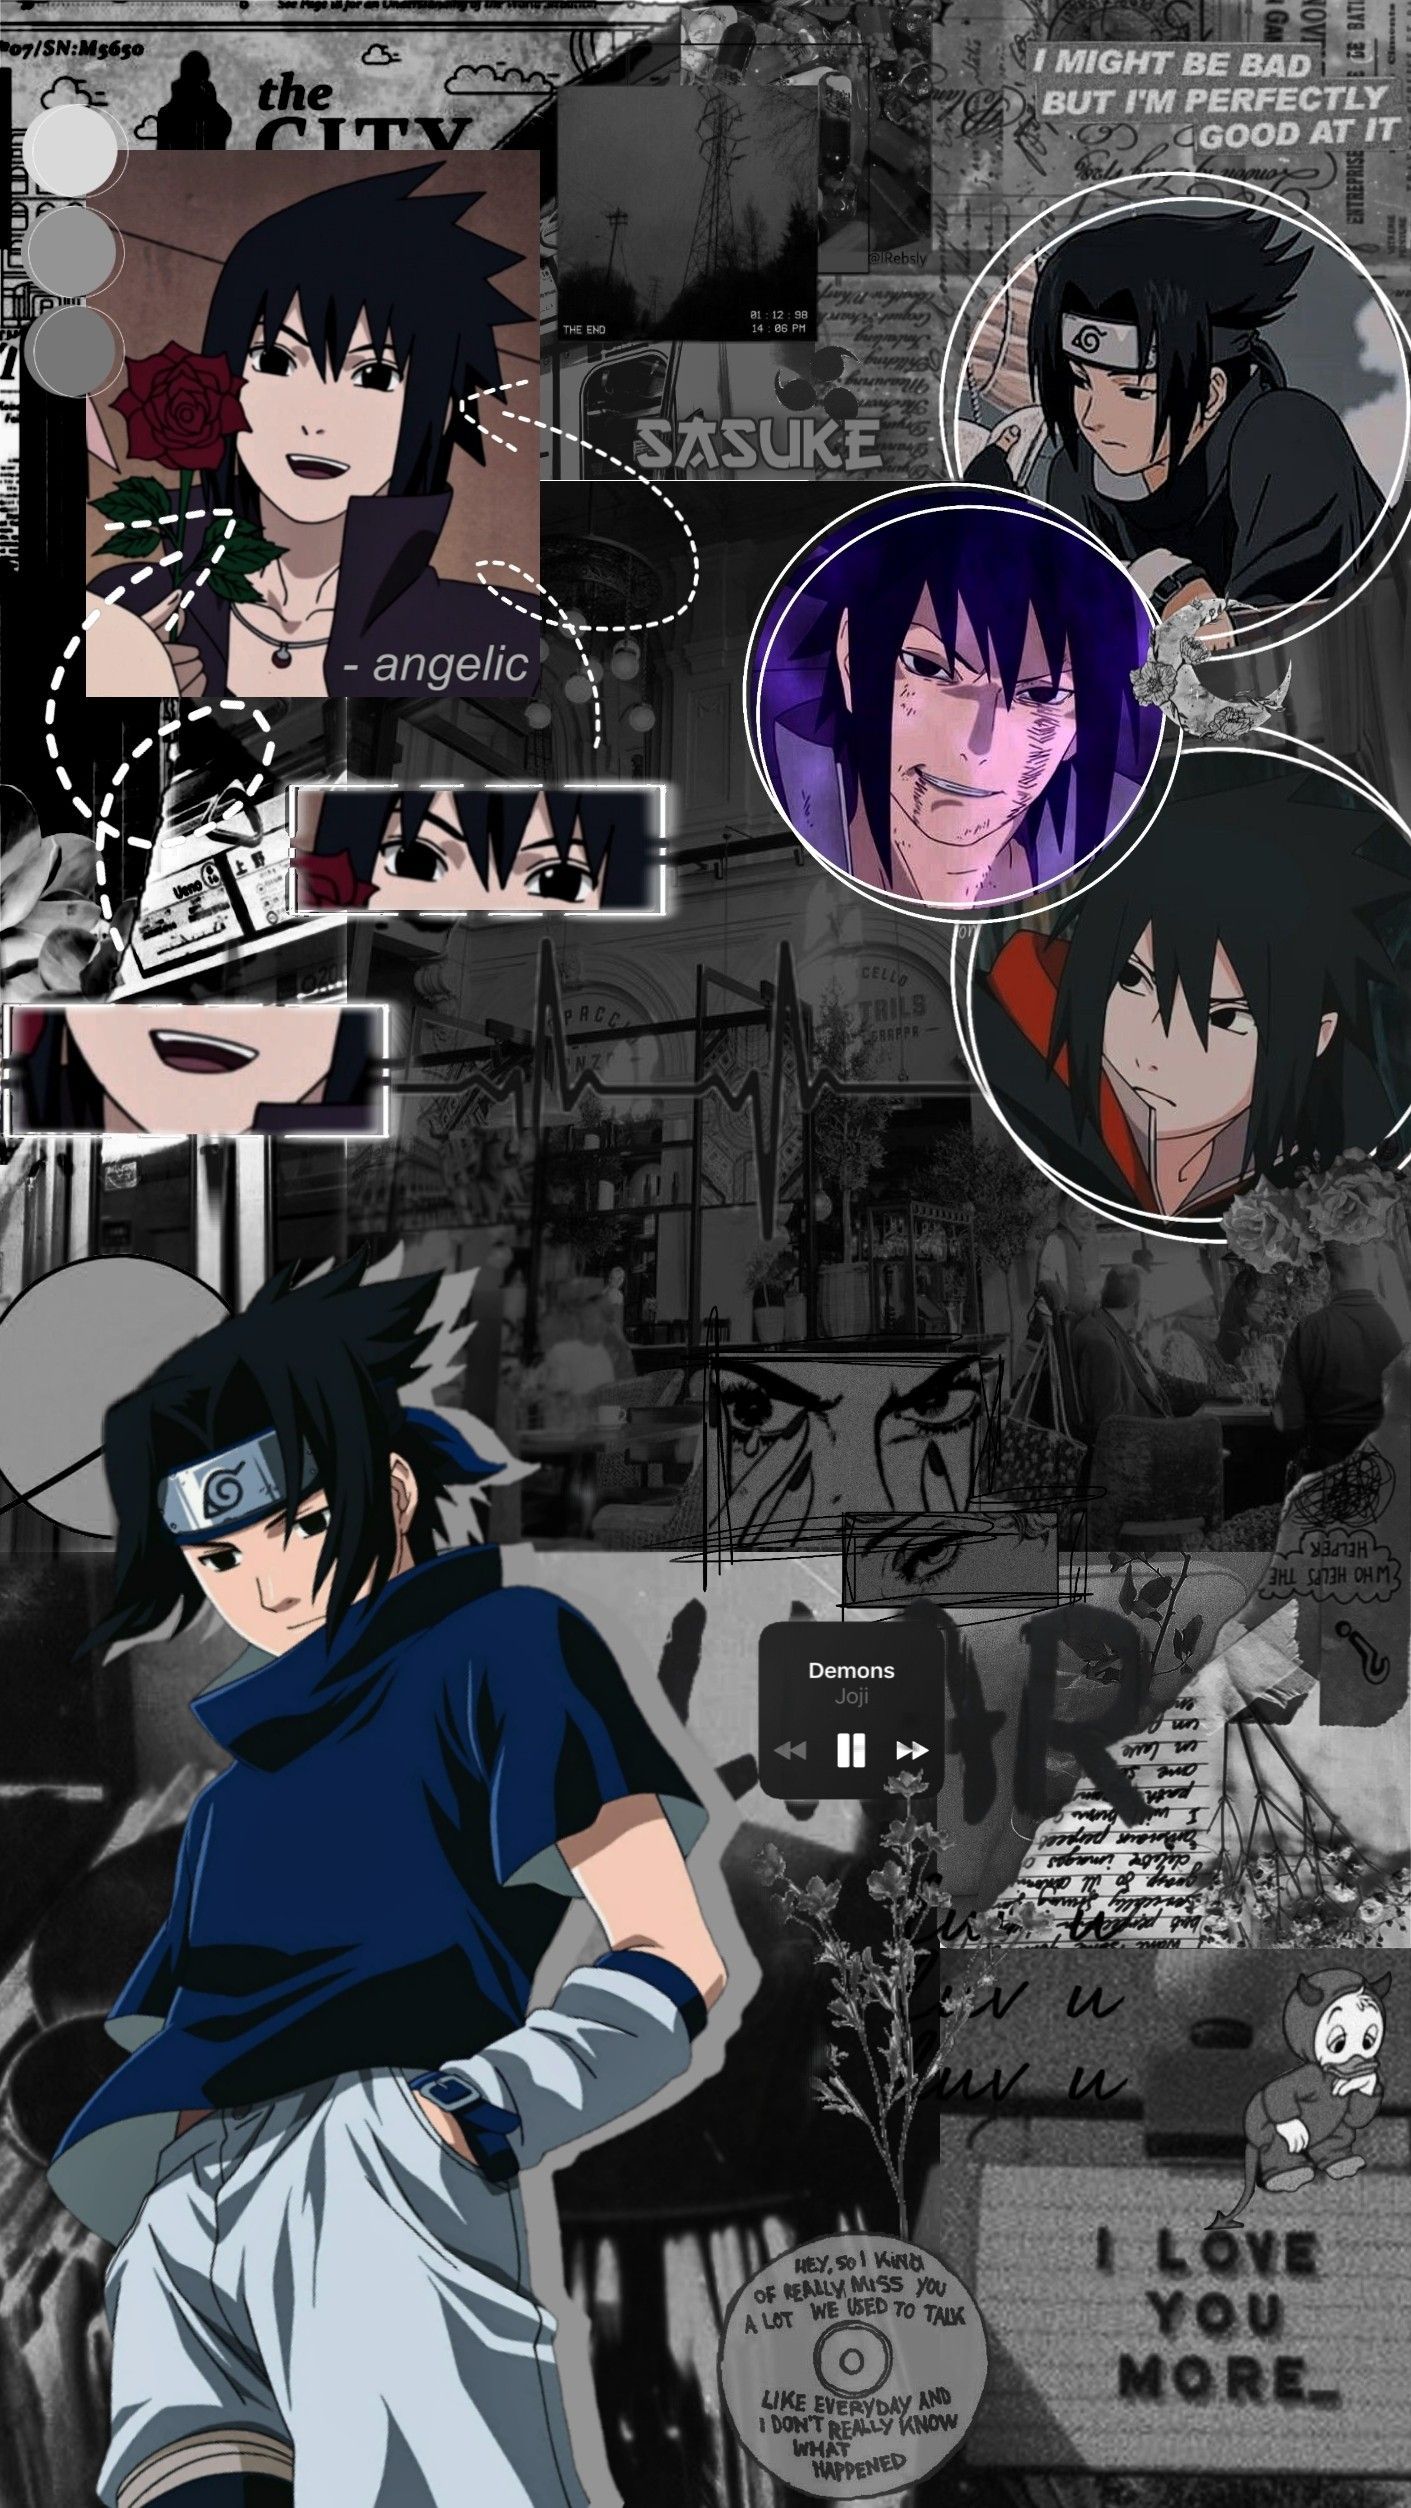 I made a sasuke wallpaper! I hope you like it! - Sasuke Uchiha